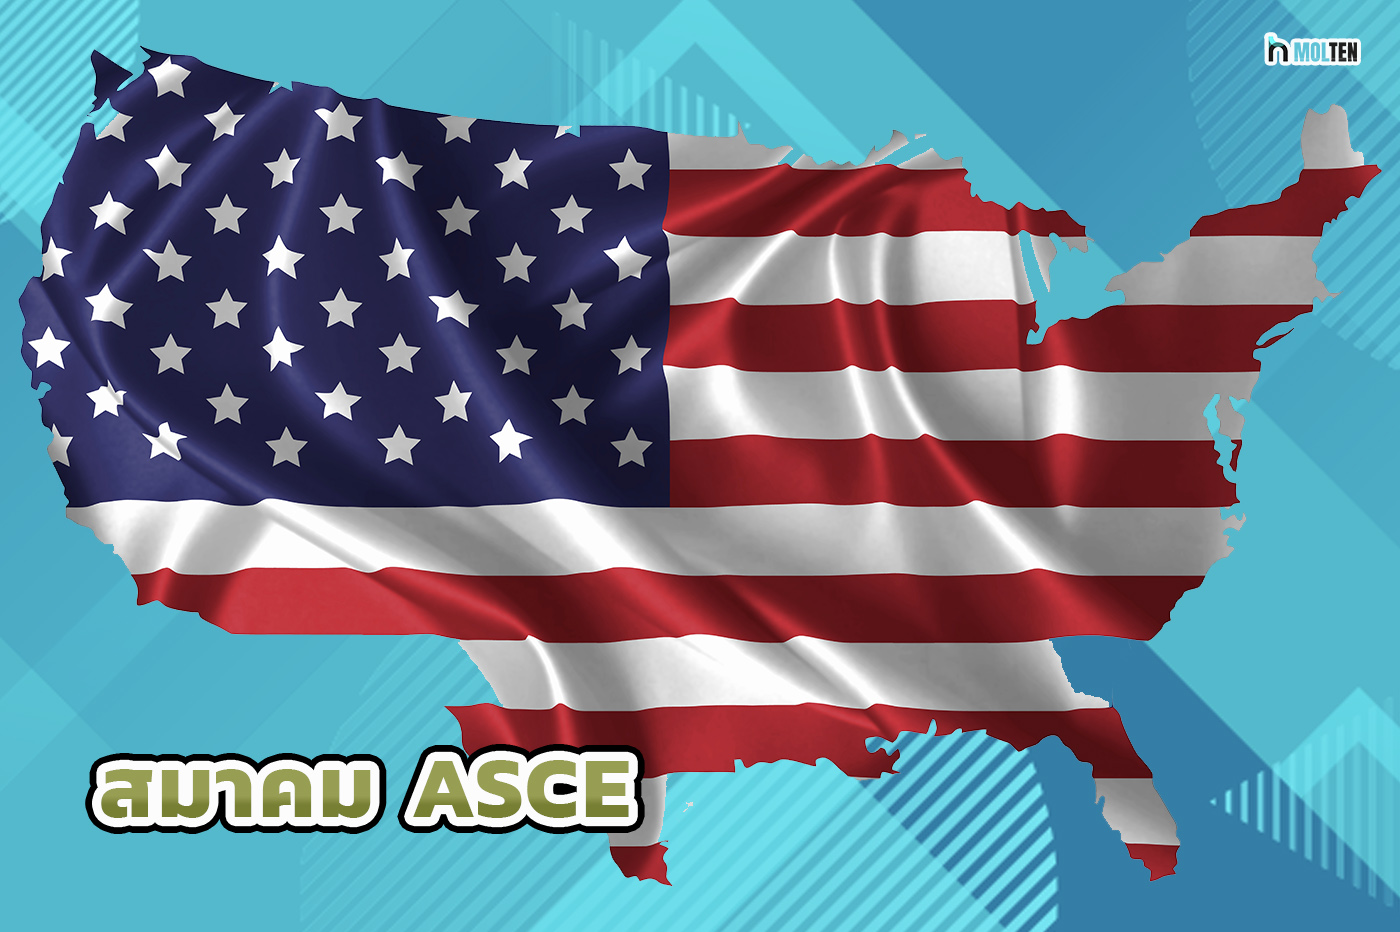 2. สมาคม ASCE เป็นผู้นำและผู้ก่อตั้งมาตรฐานสำหรับโครงสร้างพื้นฐานในสหรัฐอเมริกา